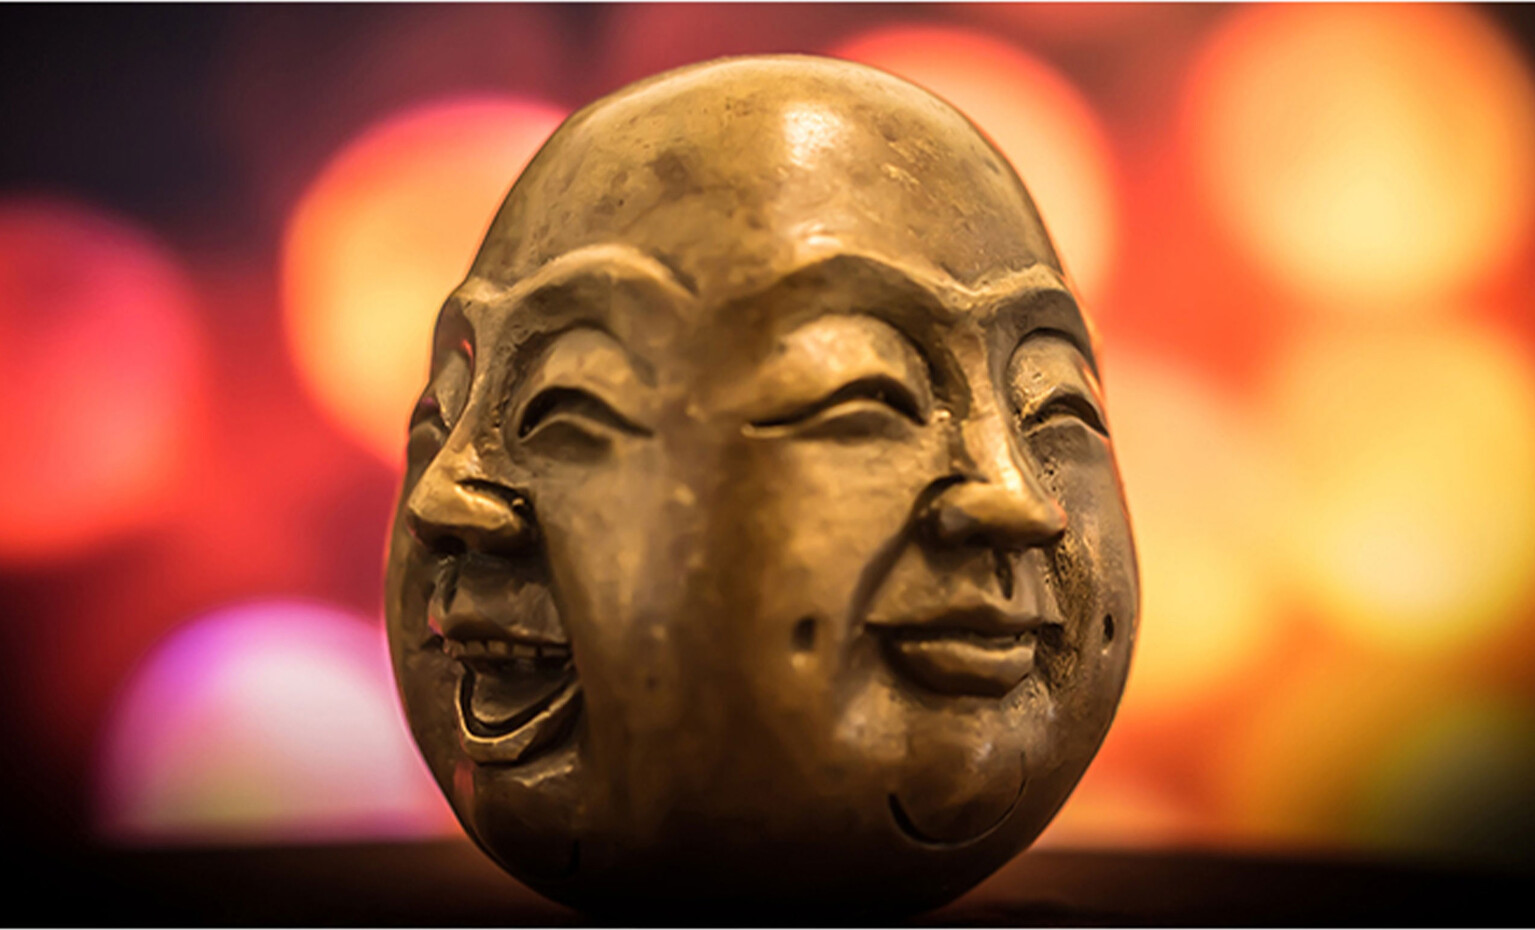 Leuchtende und bunte Fotografie einer Buddha Statue. Die Statue ist fast schon Ei-förmig und stellt die vier Gesichter Buddhas rundherum dar (lächelnd, lachend, weinend, wütend).